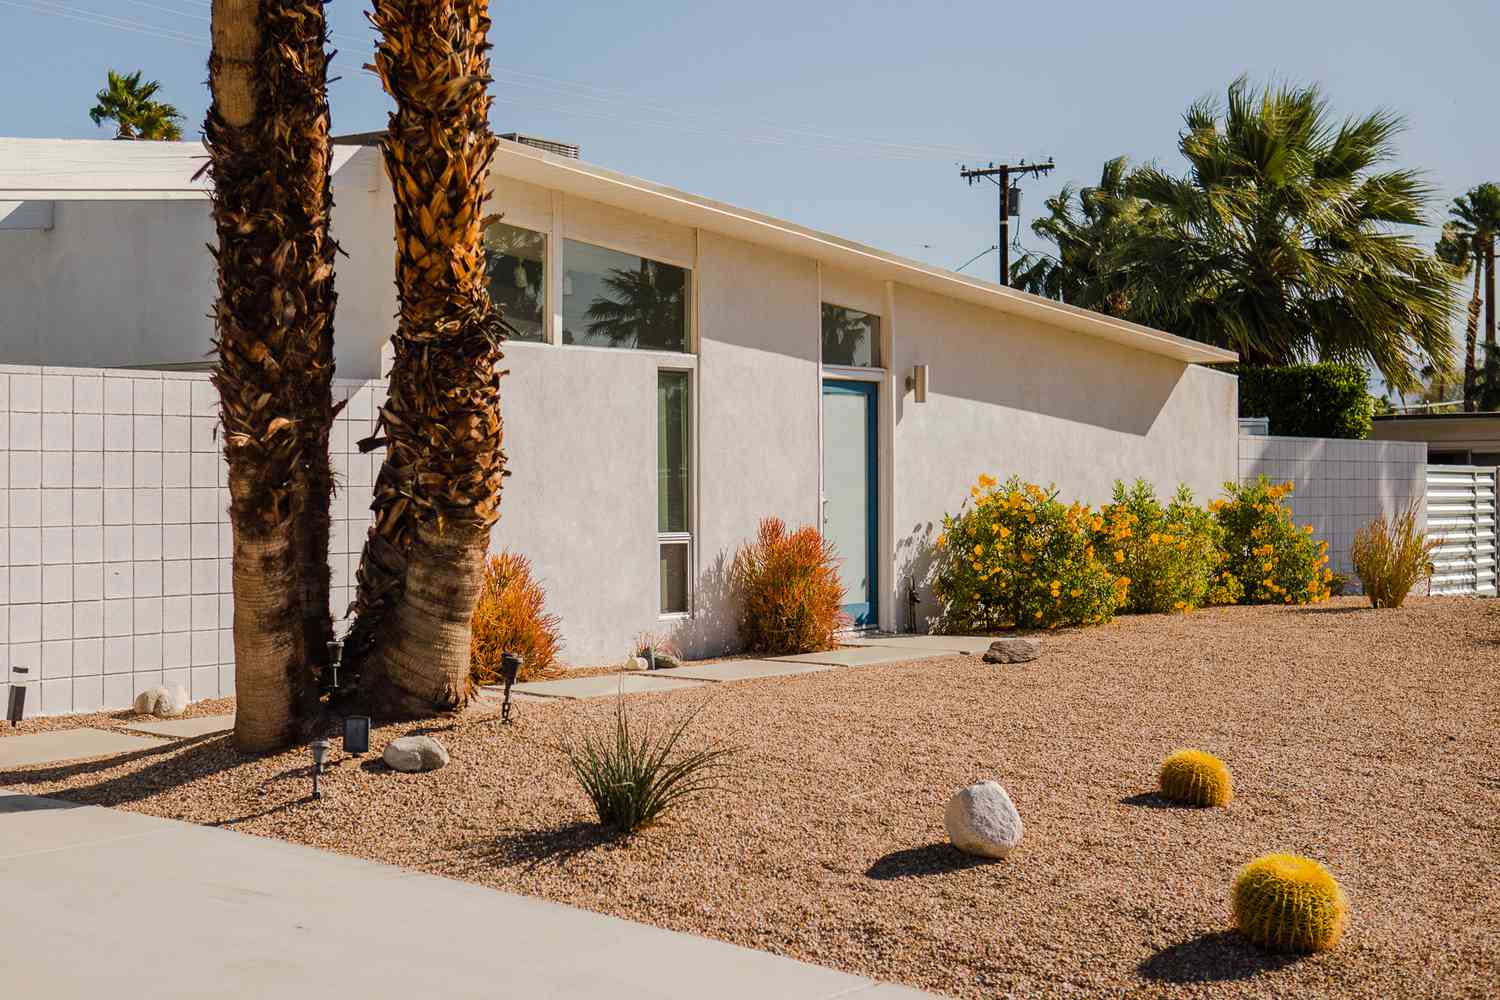 Außenansicht eines Hauses im Ranch-Stil mit minimalem Steingarten und Landschaftsgestaltung